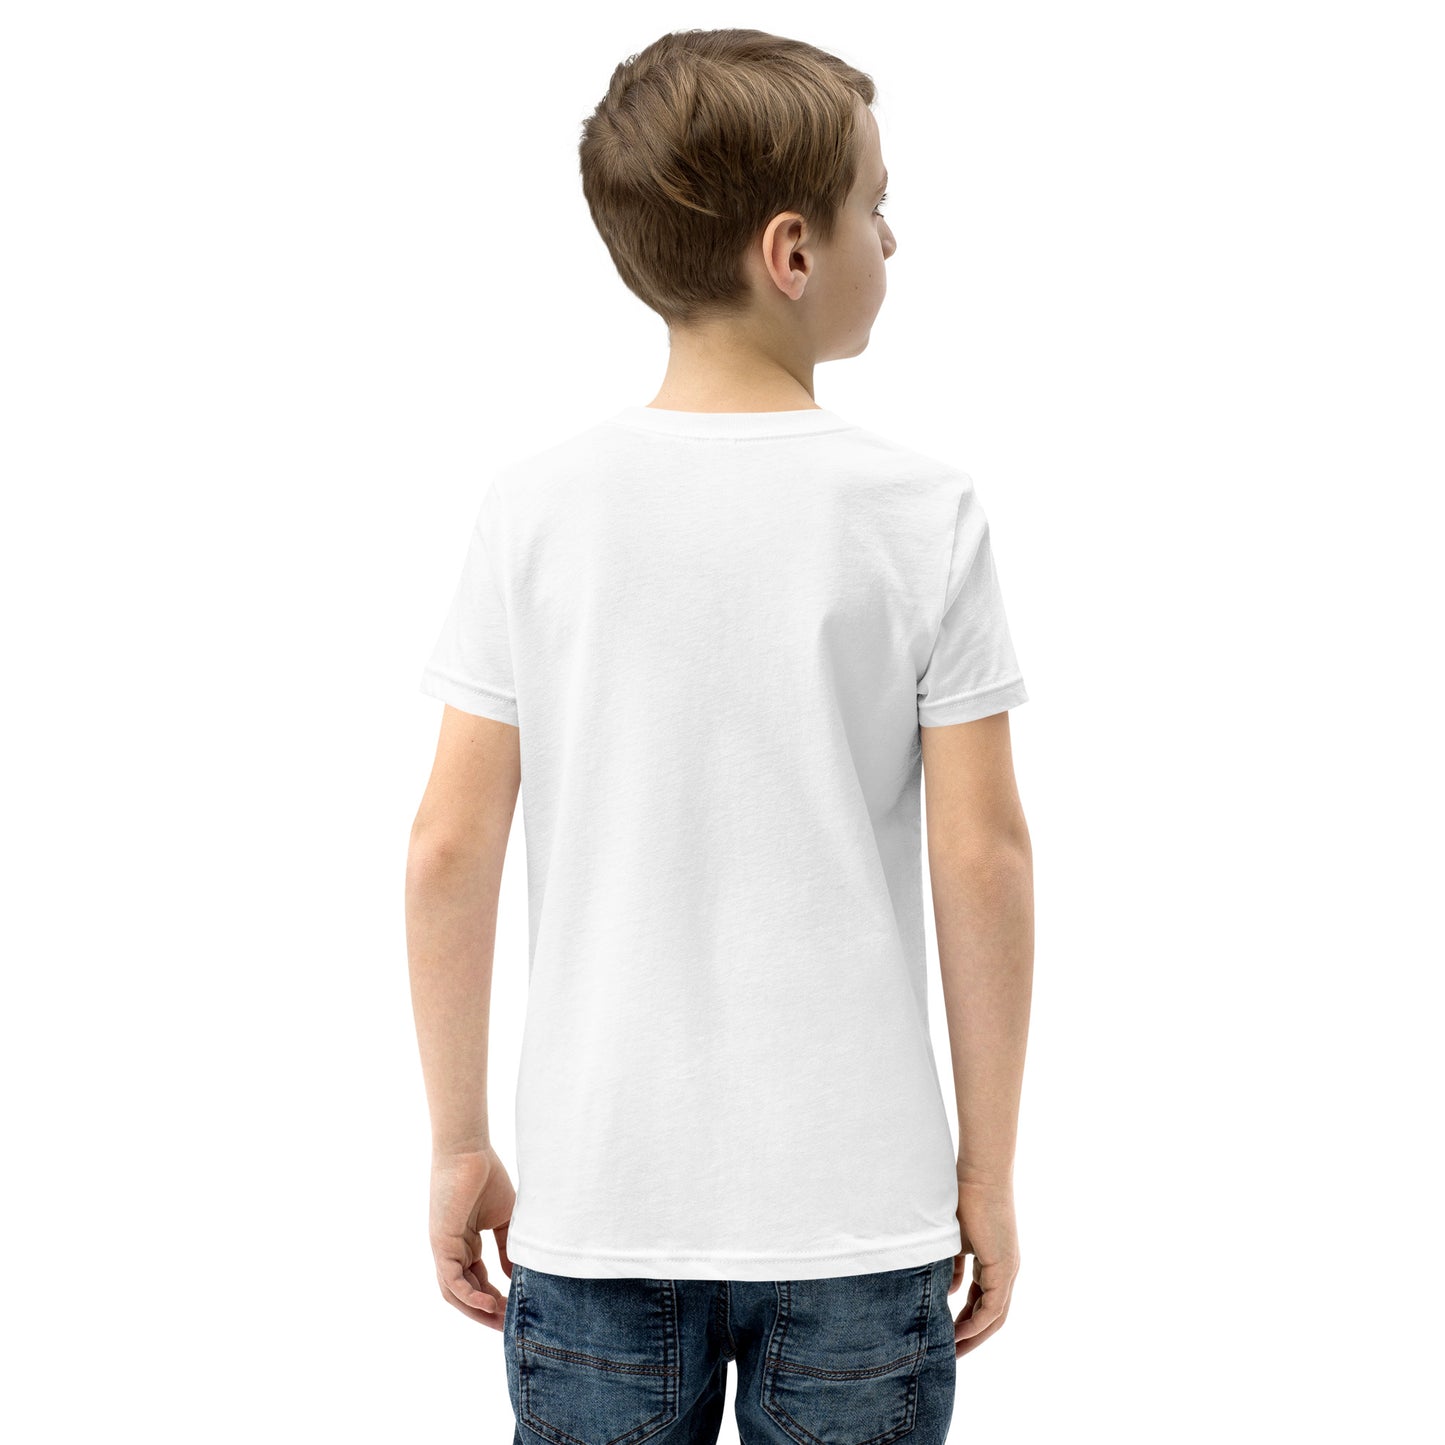 Noah Rain Hope World Youth Short Sleeve T-Shirt